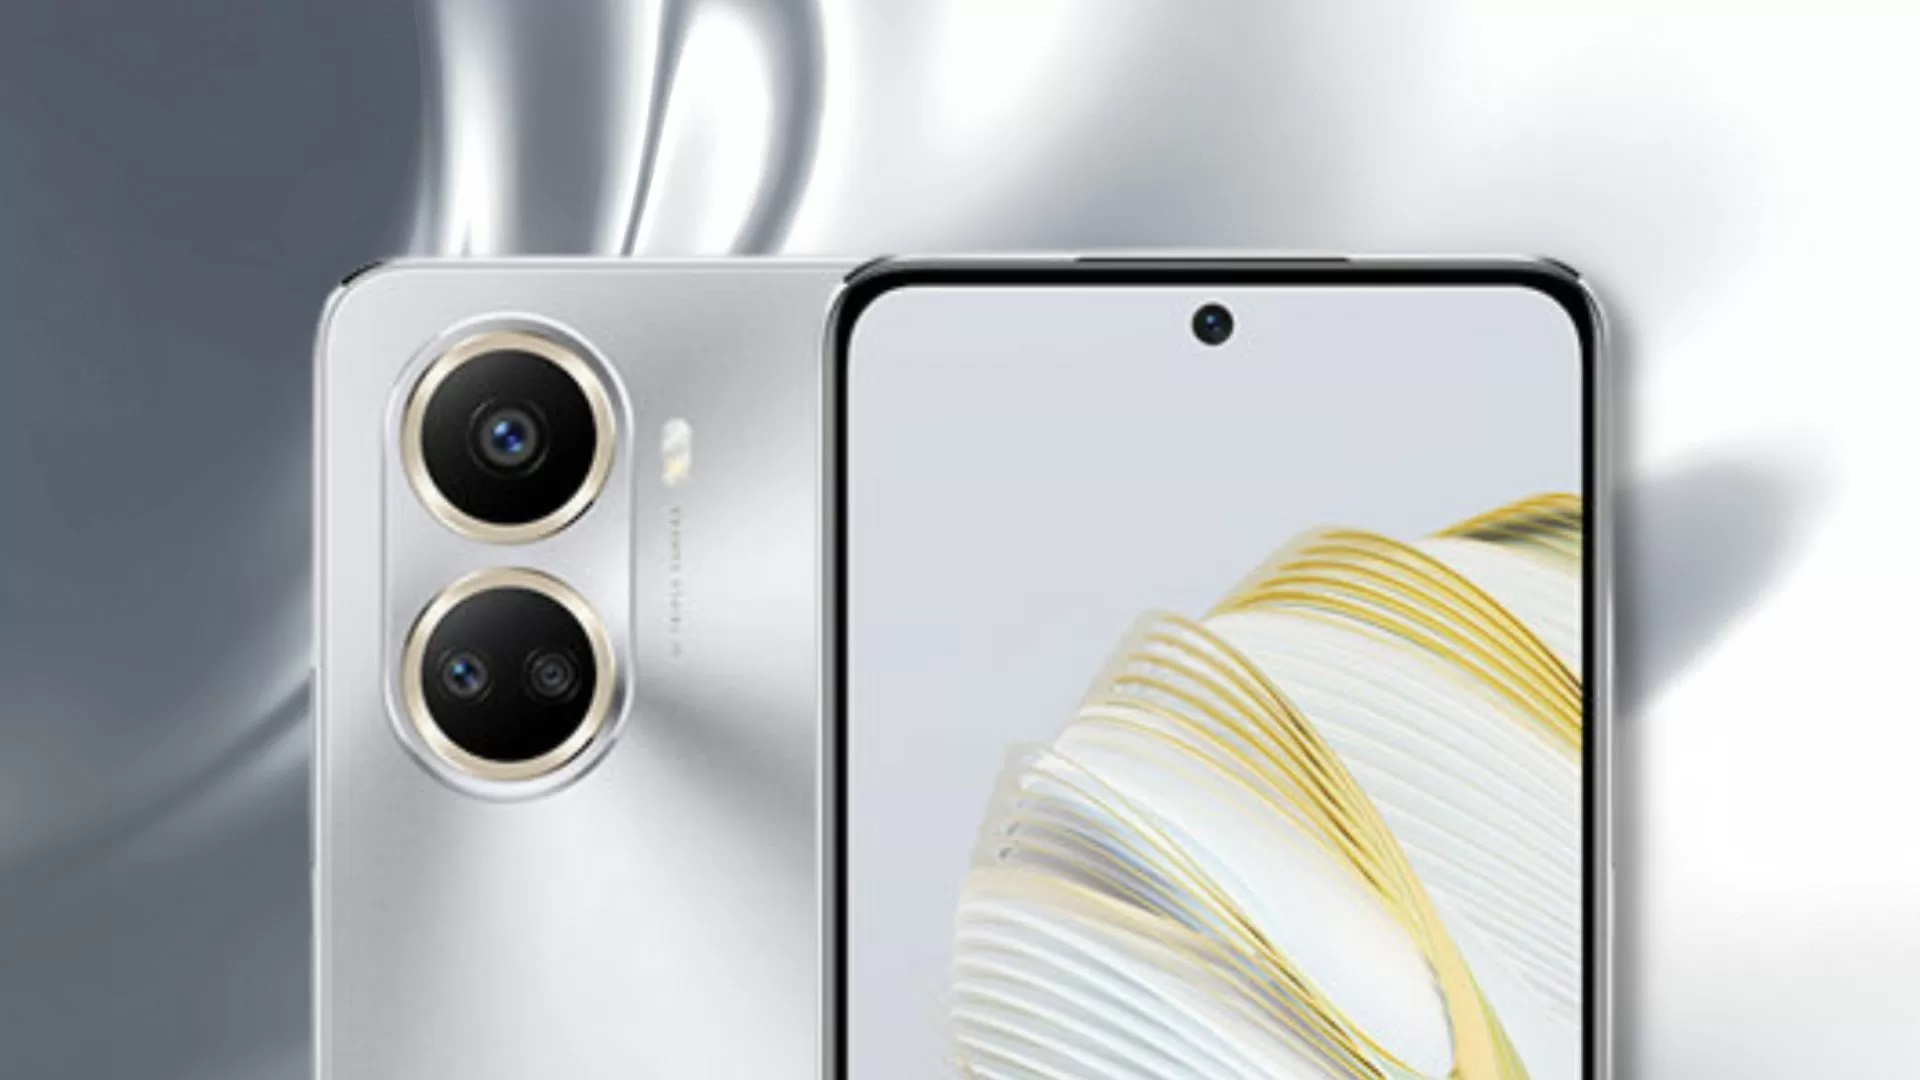 Huawei enthüllt das Nova 10 SE Smartphone mit niedlichem Design, 108 MP Kamera und 66 Watt Ladeleistung